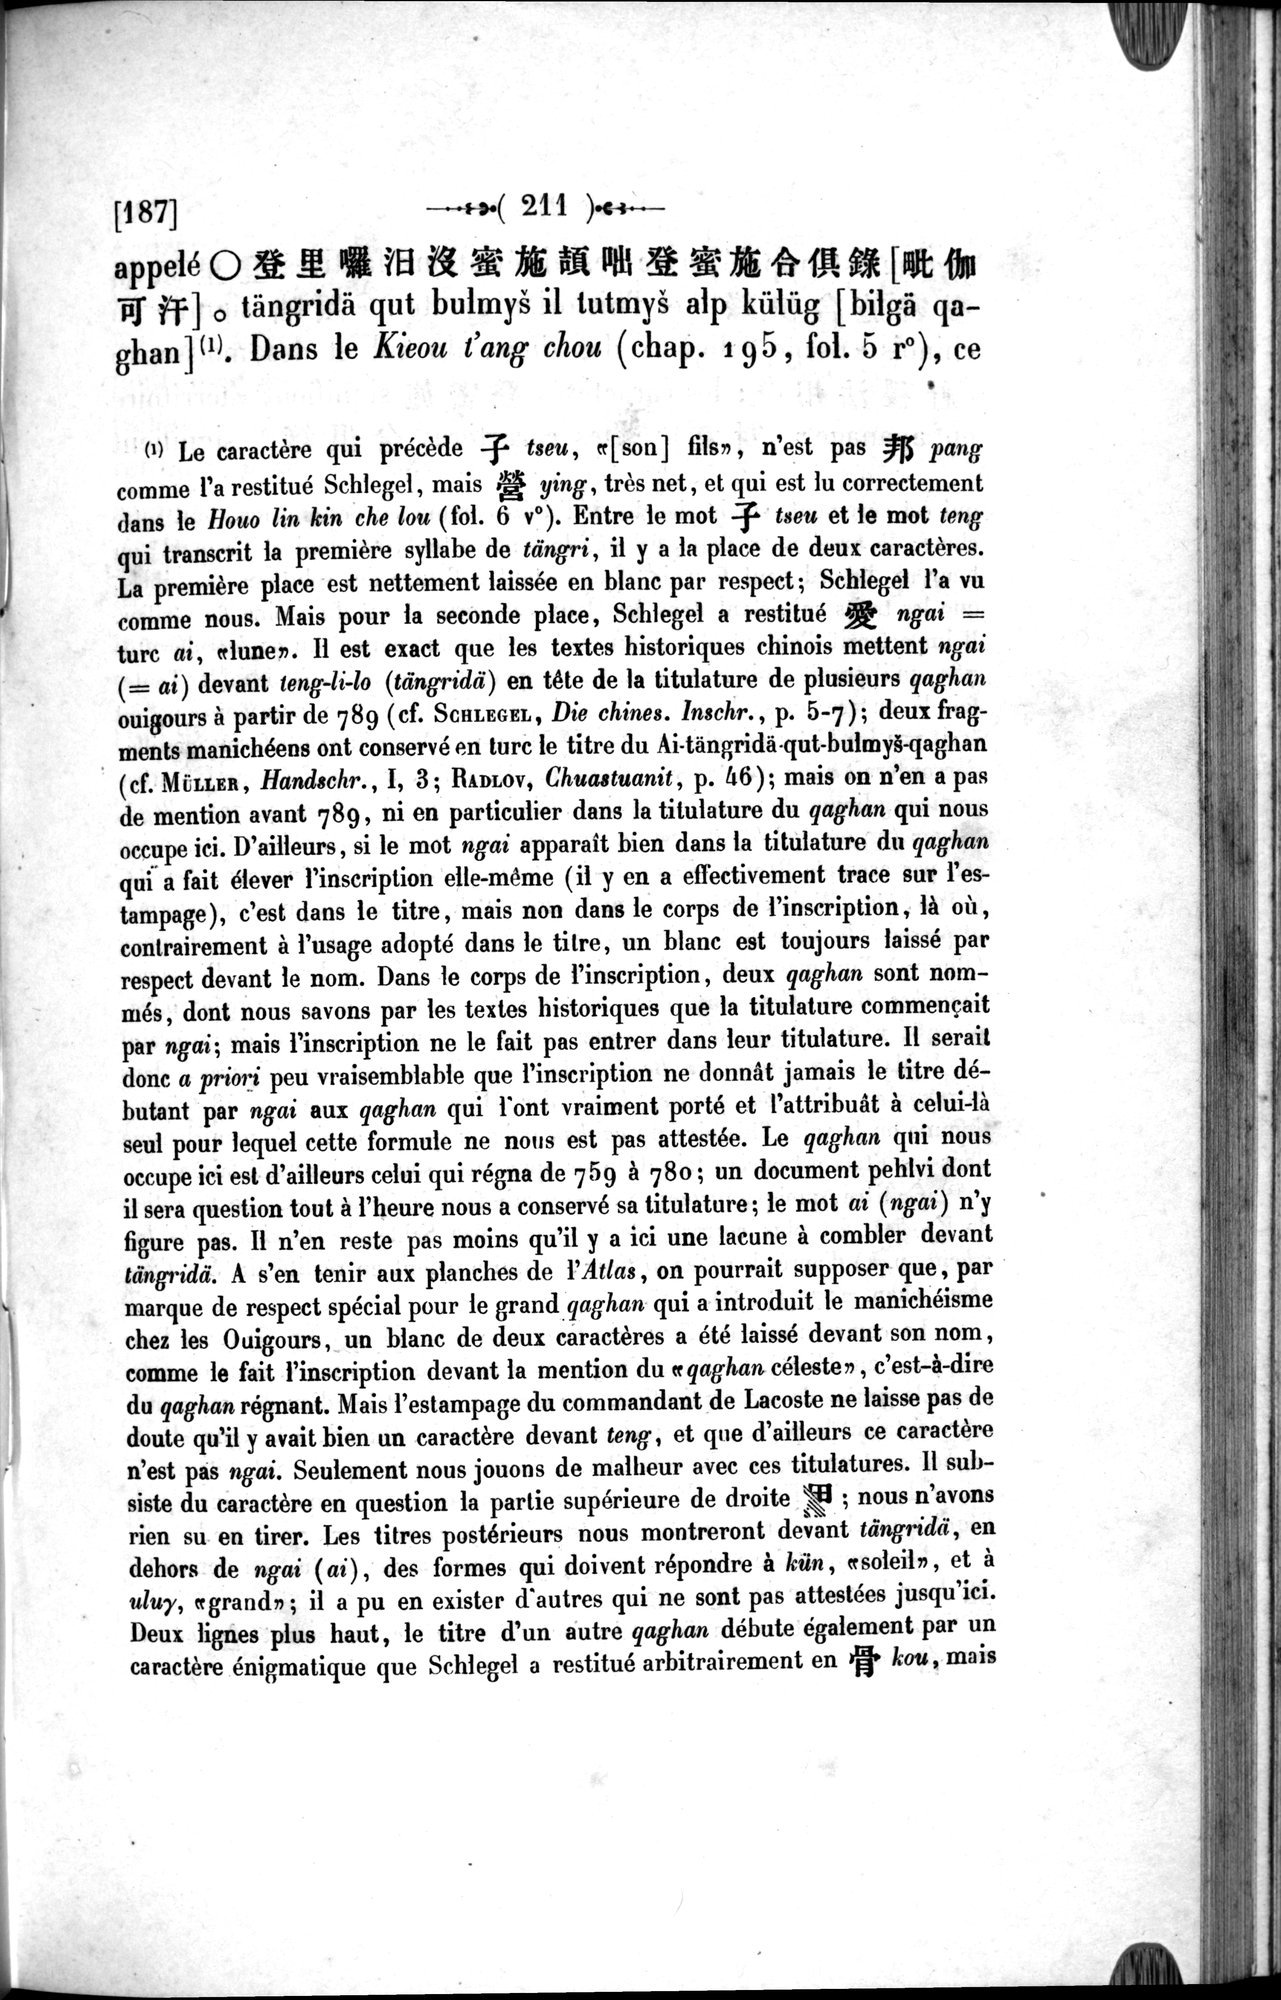 Un traité manichéen retrouvé en Chine : vol.1 / Page 221 (Grayscale High Resolution Image)